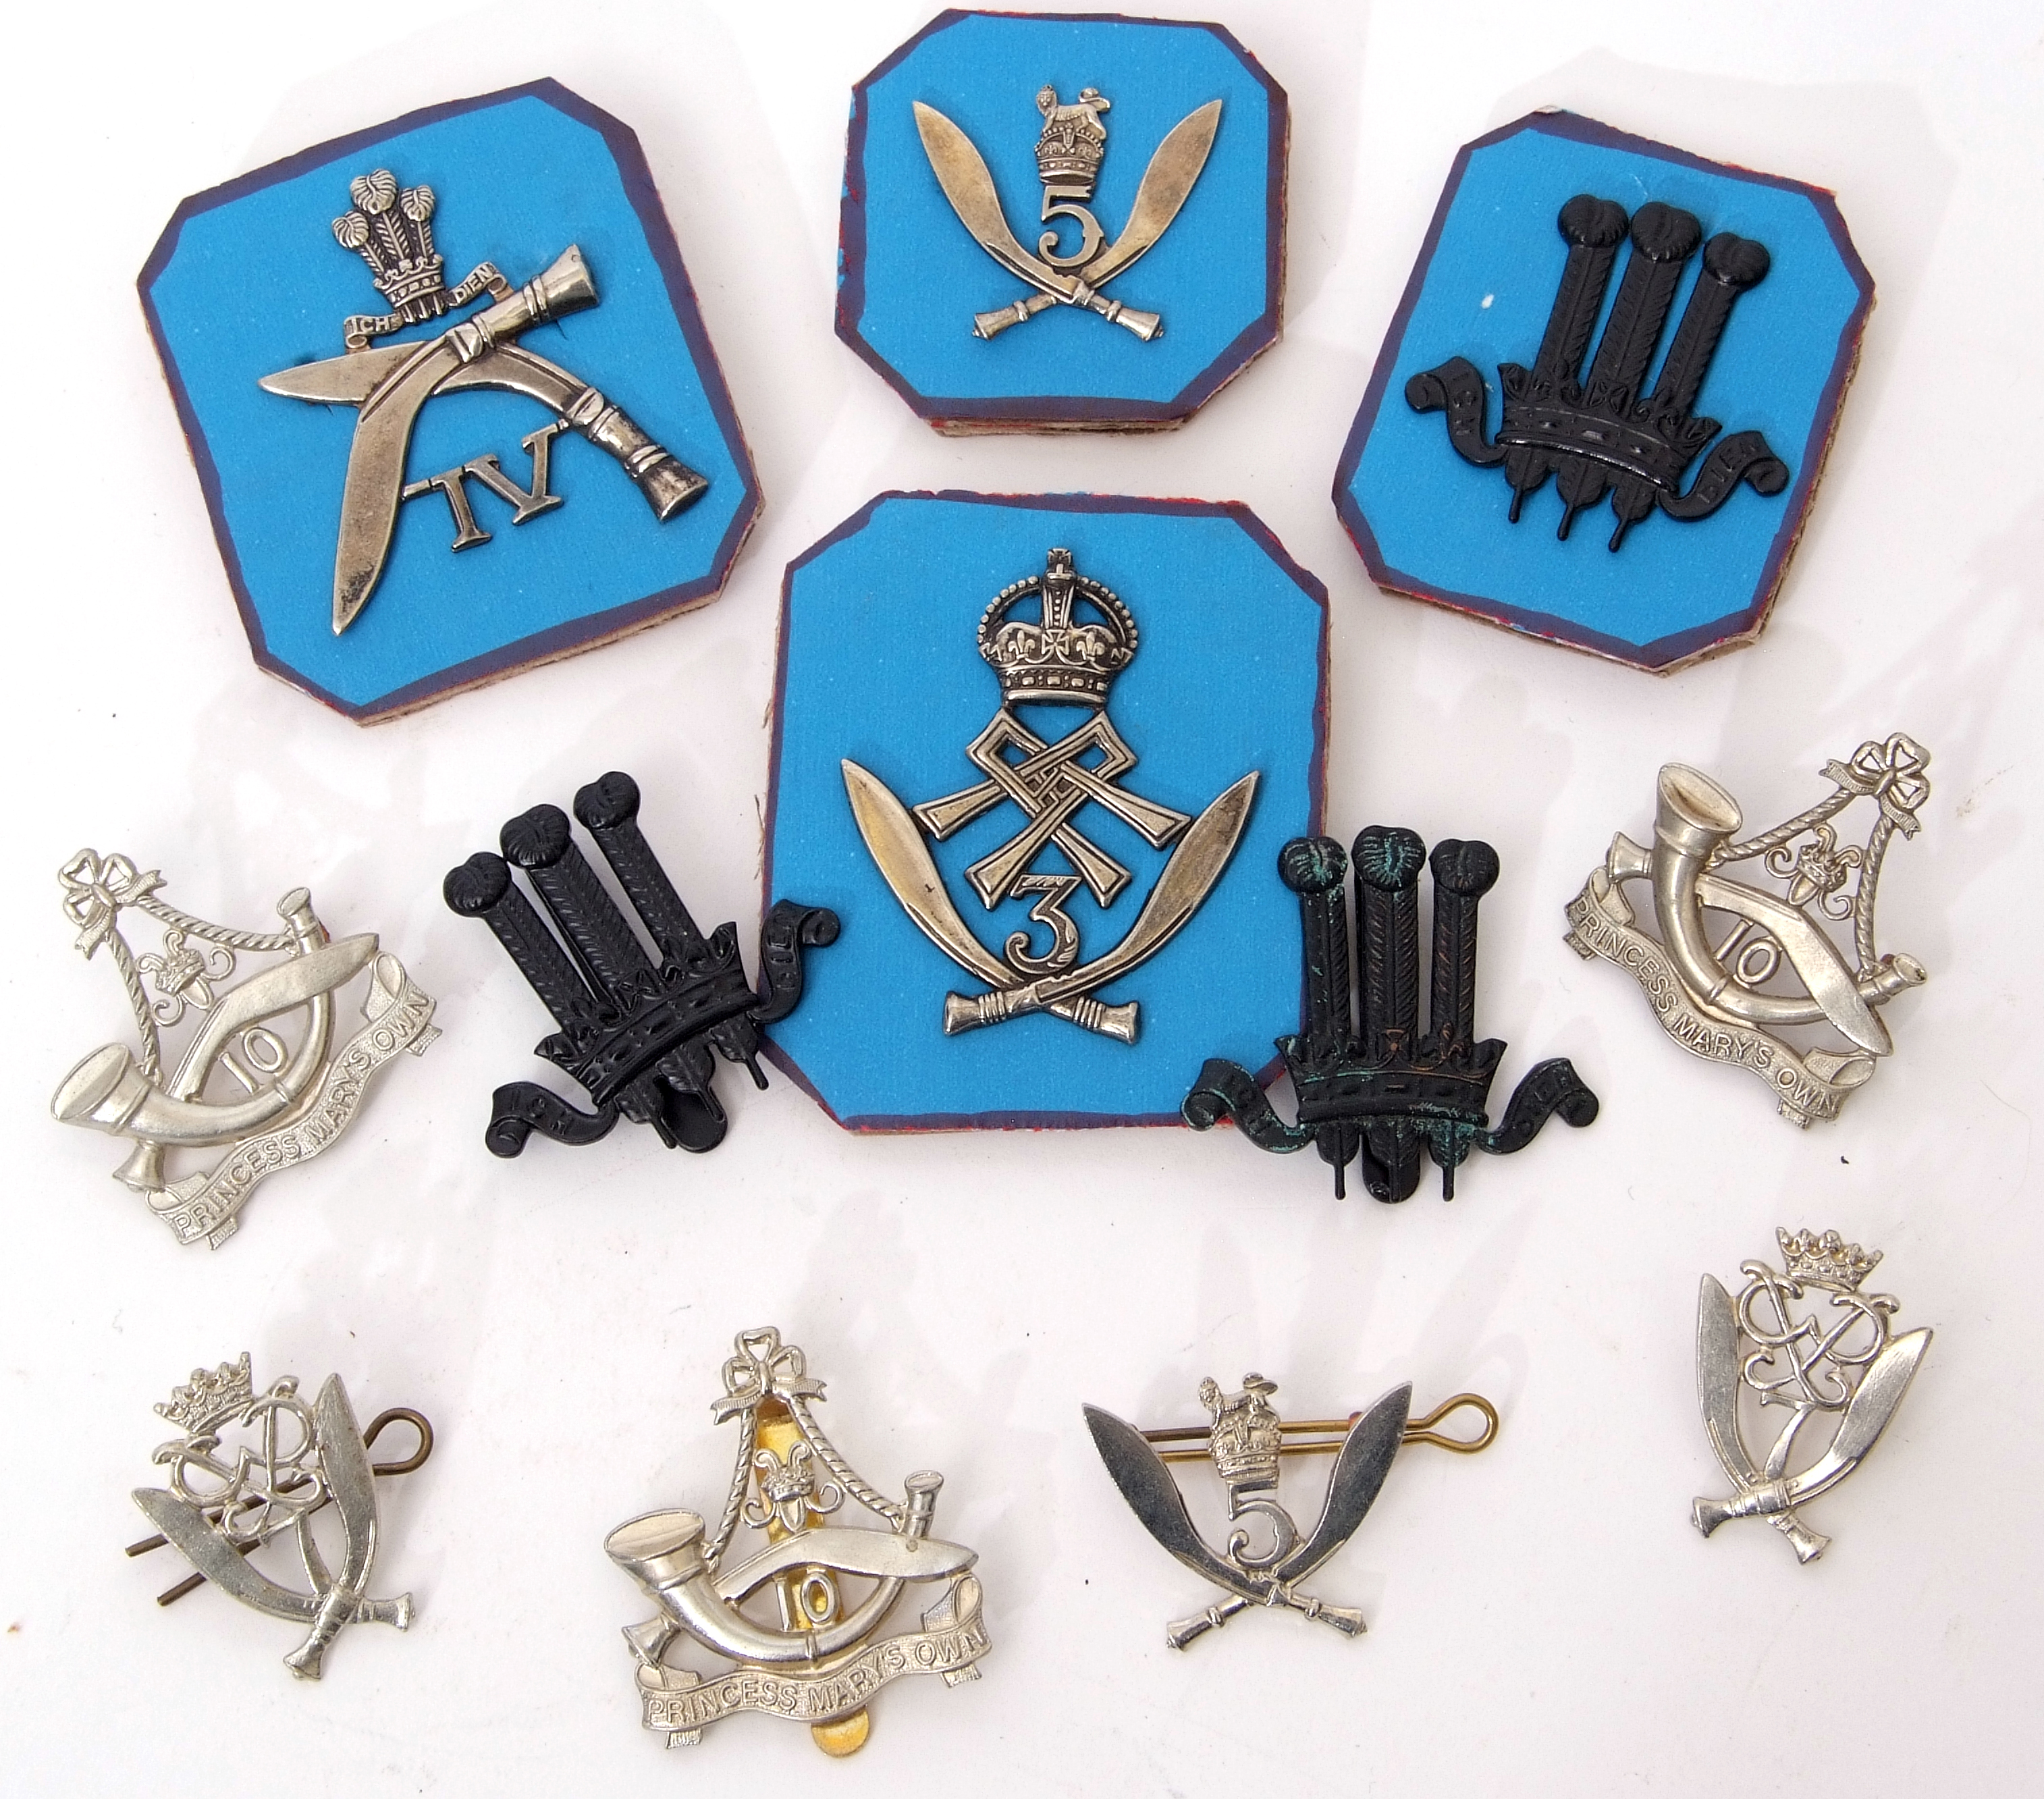 Mixed Lot: Gurkha cap badges to include 4th Prince of Wales Gurkhas, 5th Gurkha Rifles, 7th Gurkha